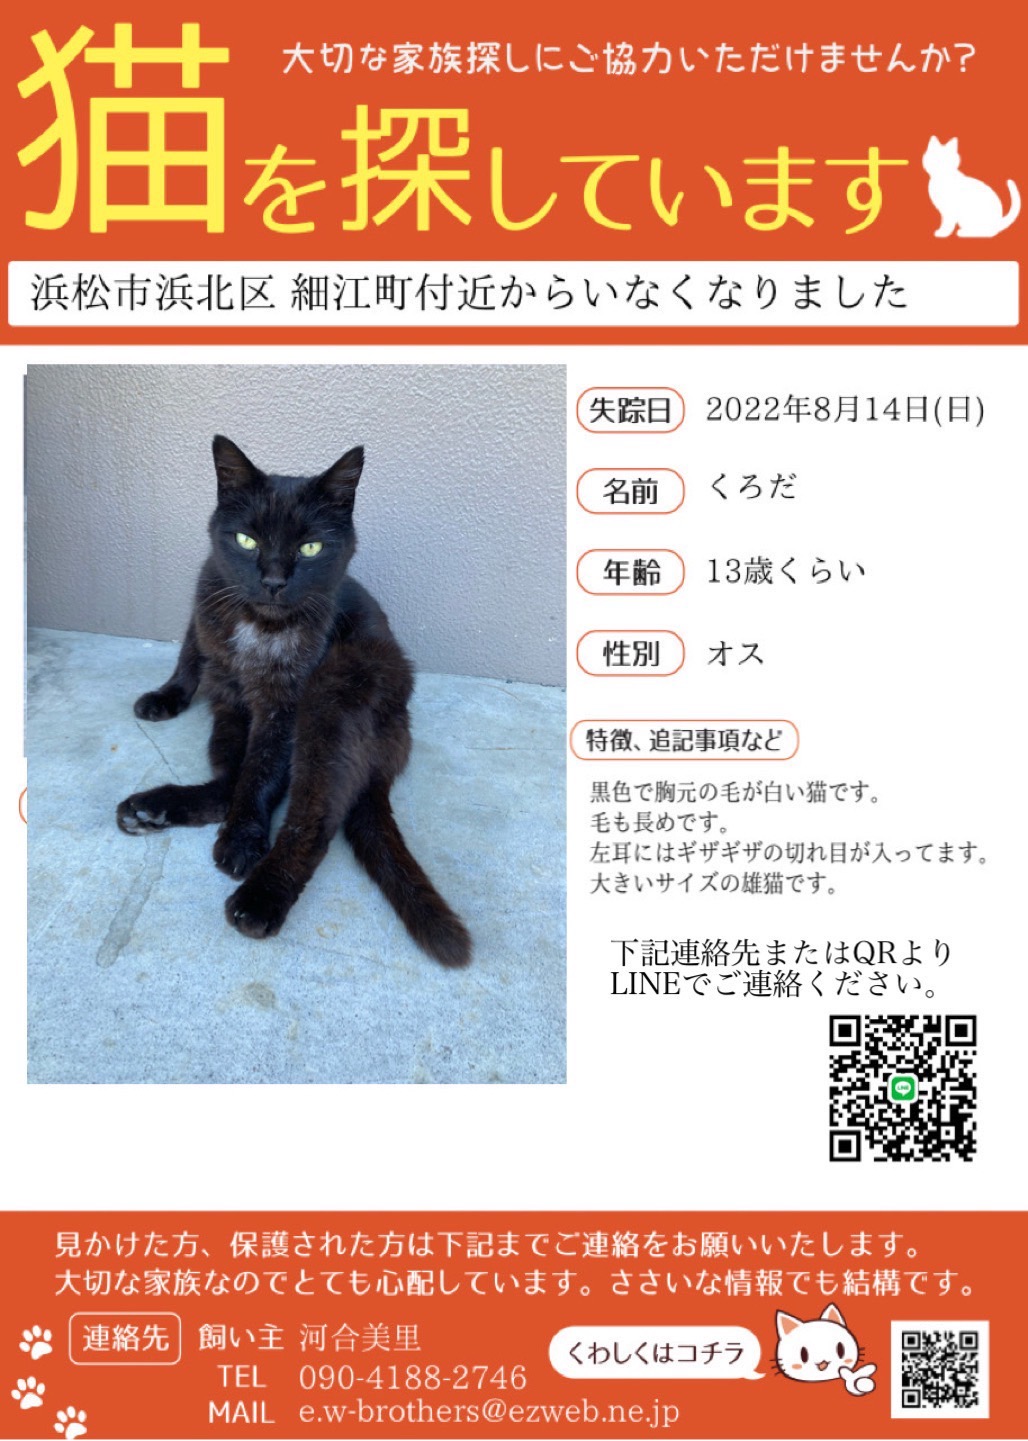 探しています 迷い猫 迷い犬情報 猫と暮らす会 静岡県浜松市を拠点とし 人と猫の共生をテーマに活動を行なっております 猫 の里親募集中 譲渡会も定期的に行っています